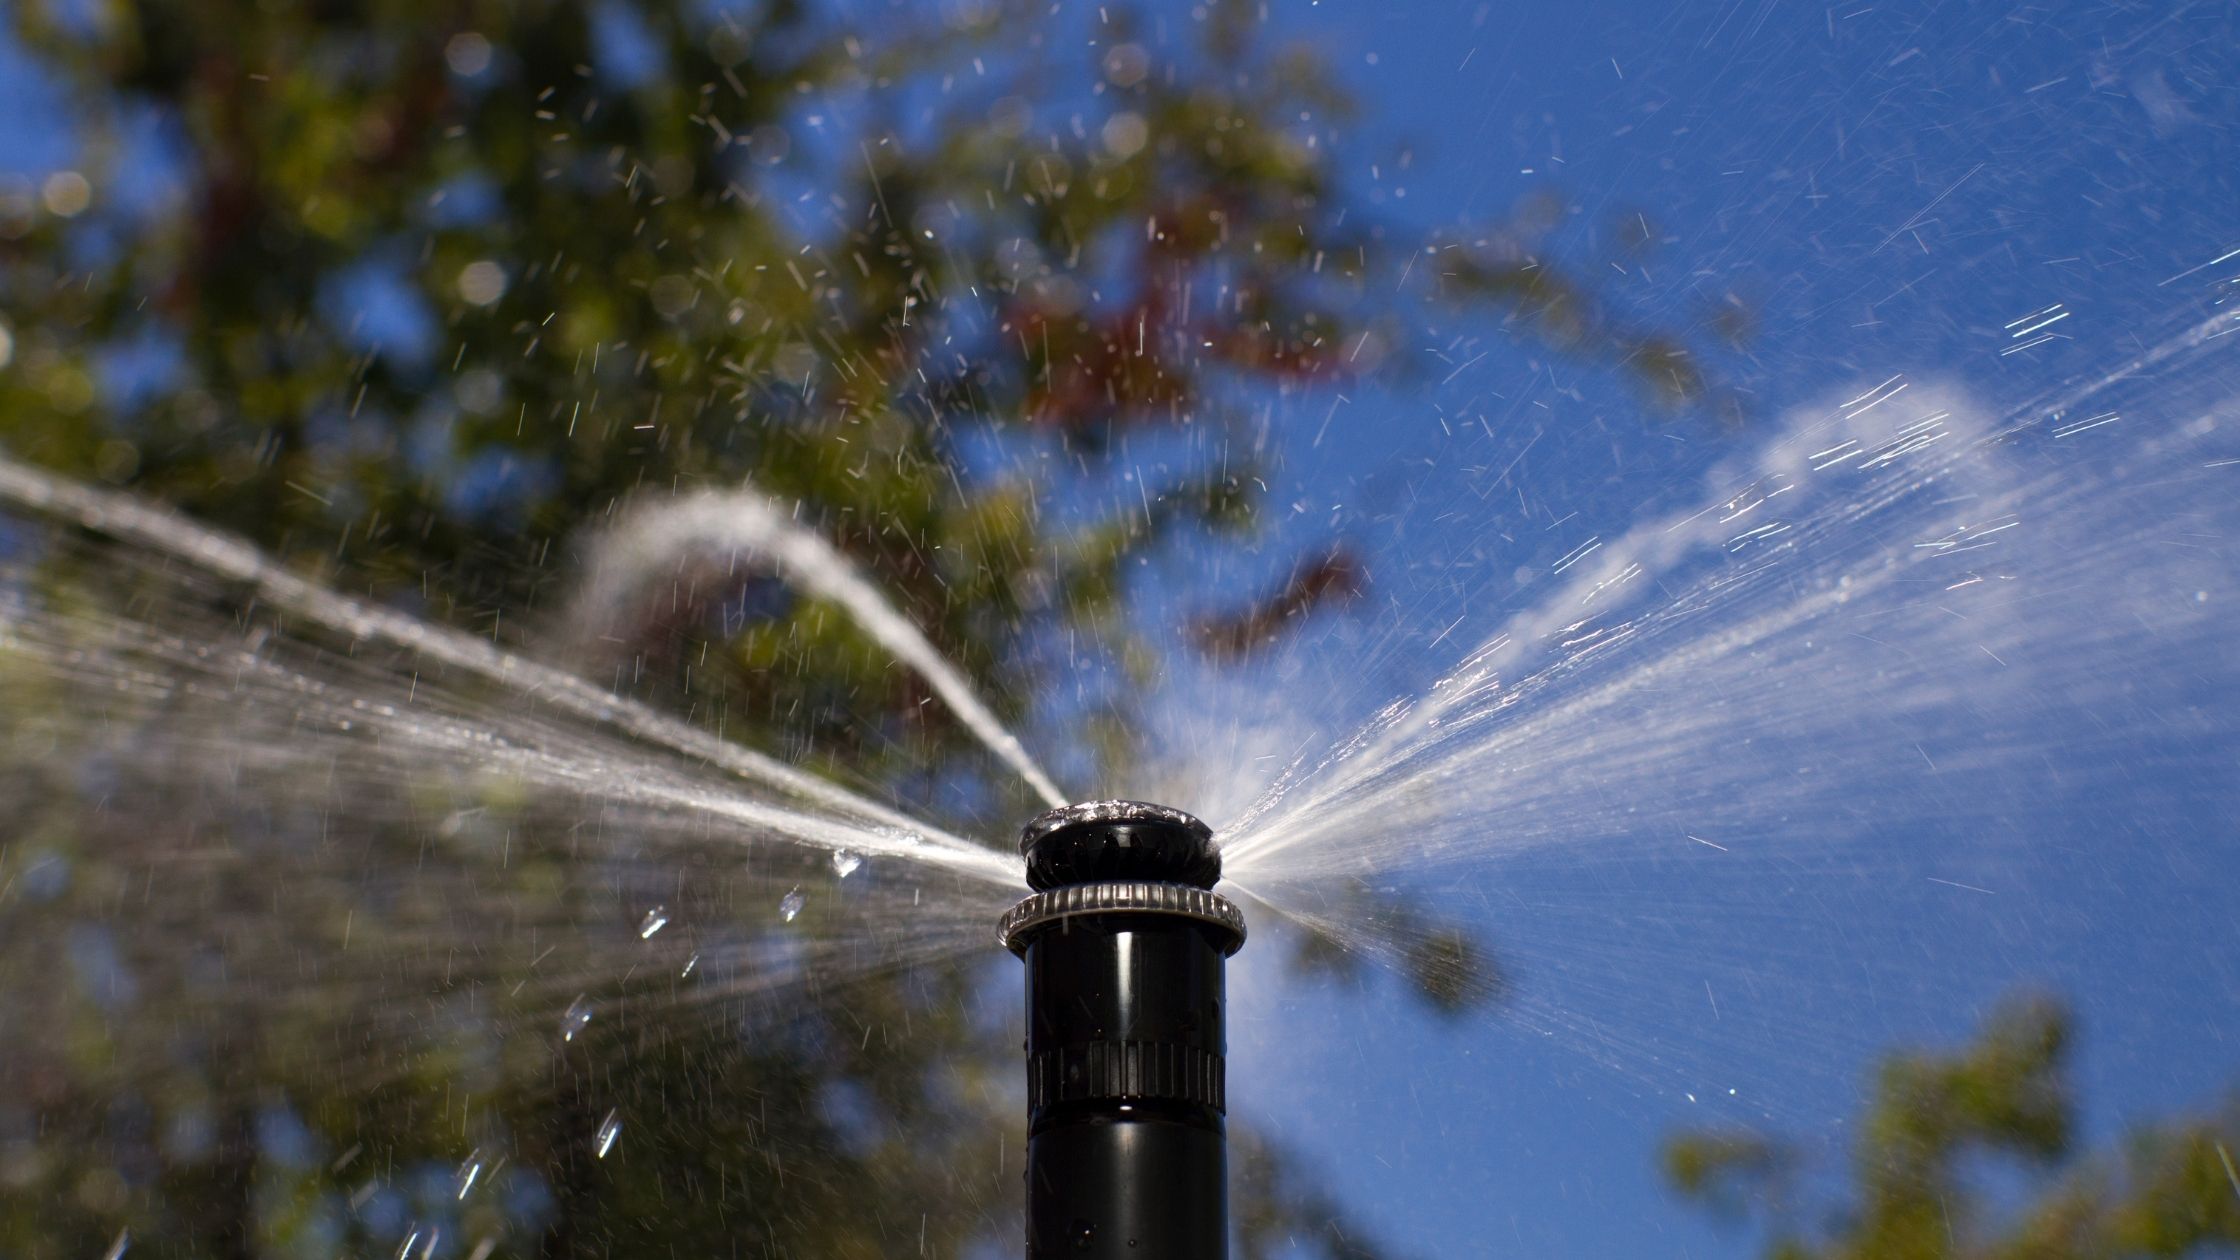 types of sprinklers: Rotating sprinklers